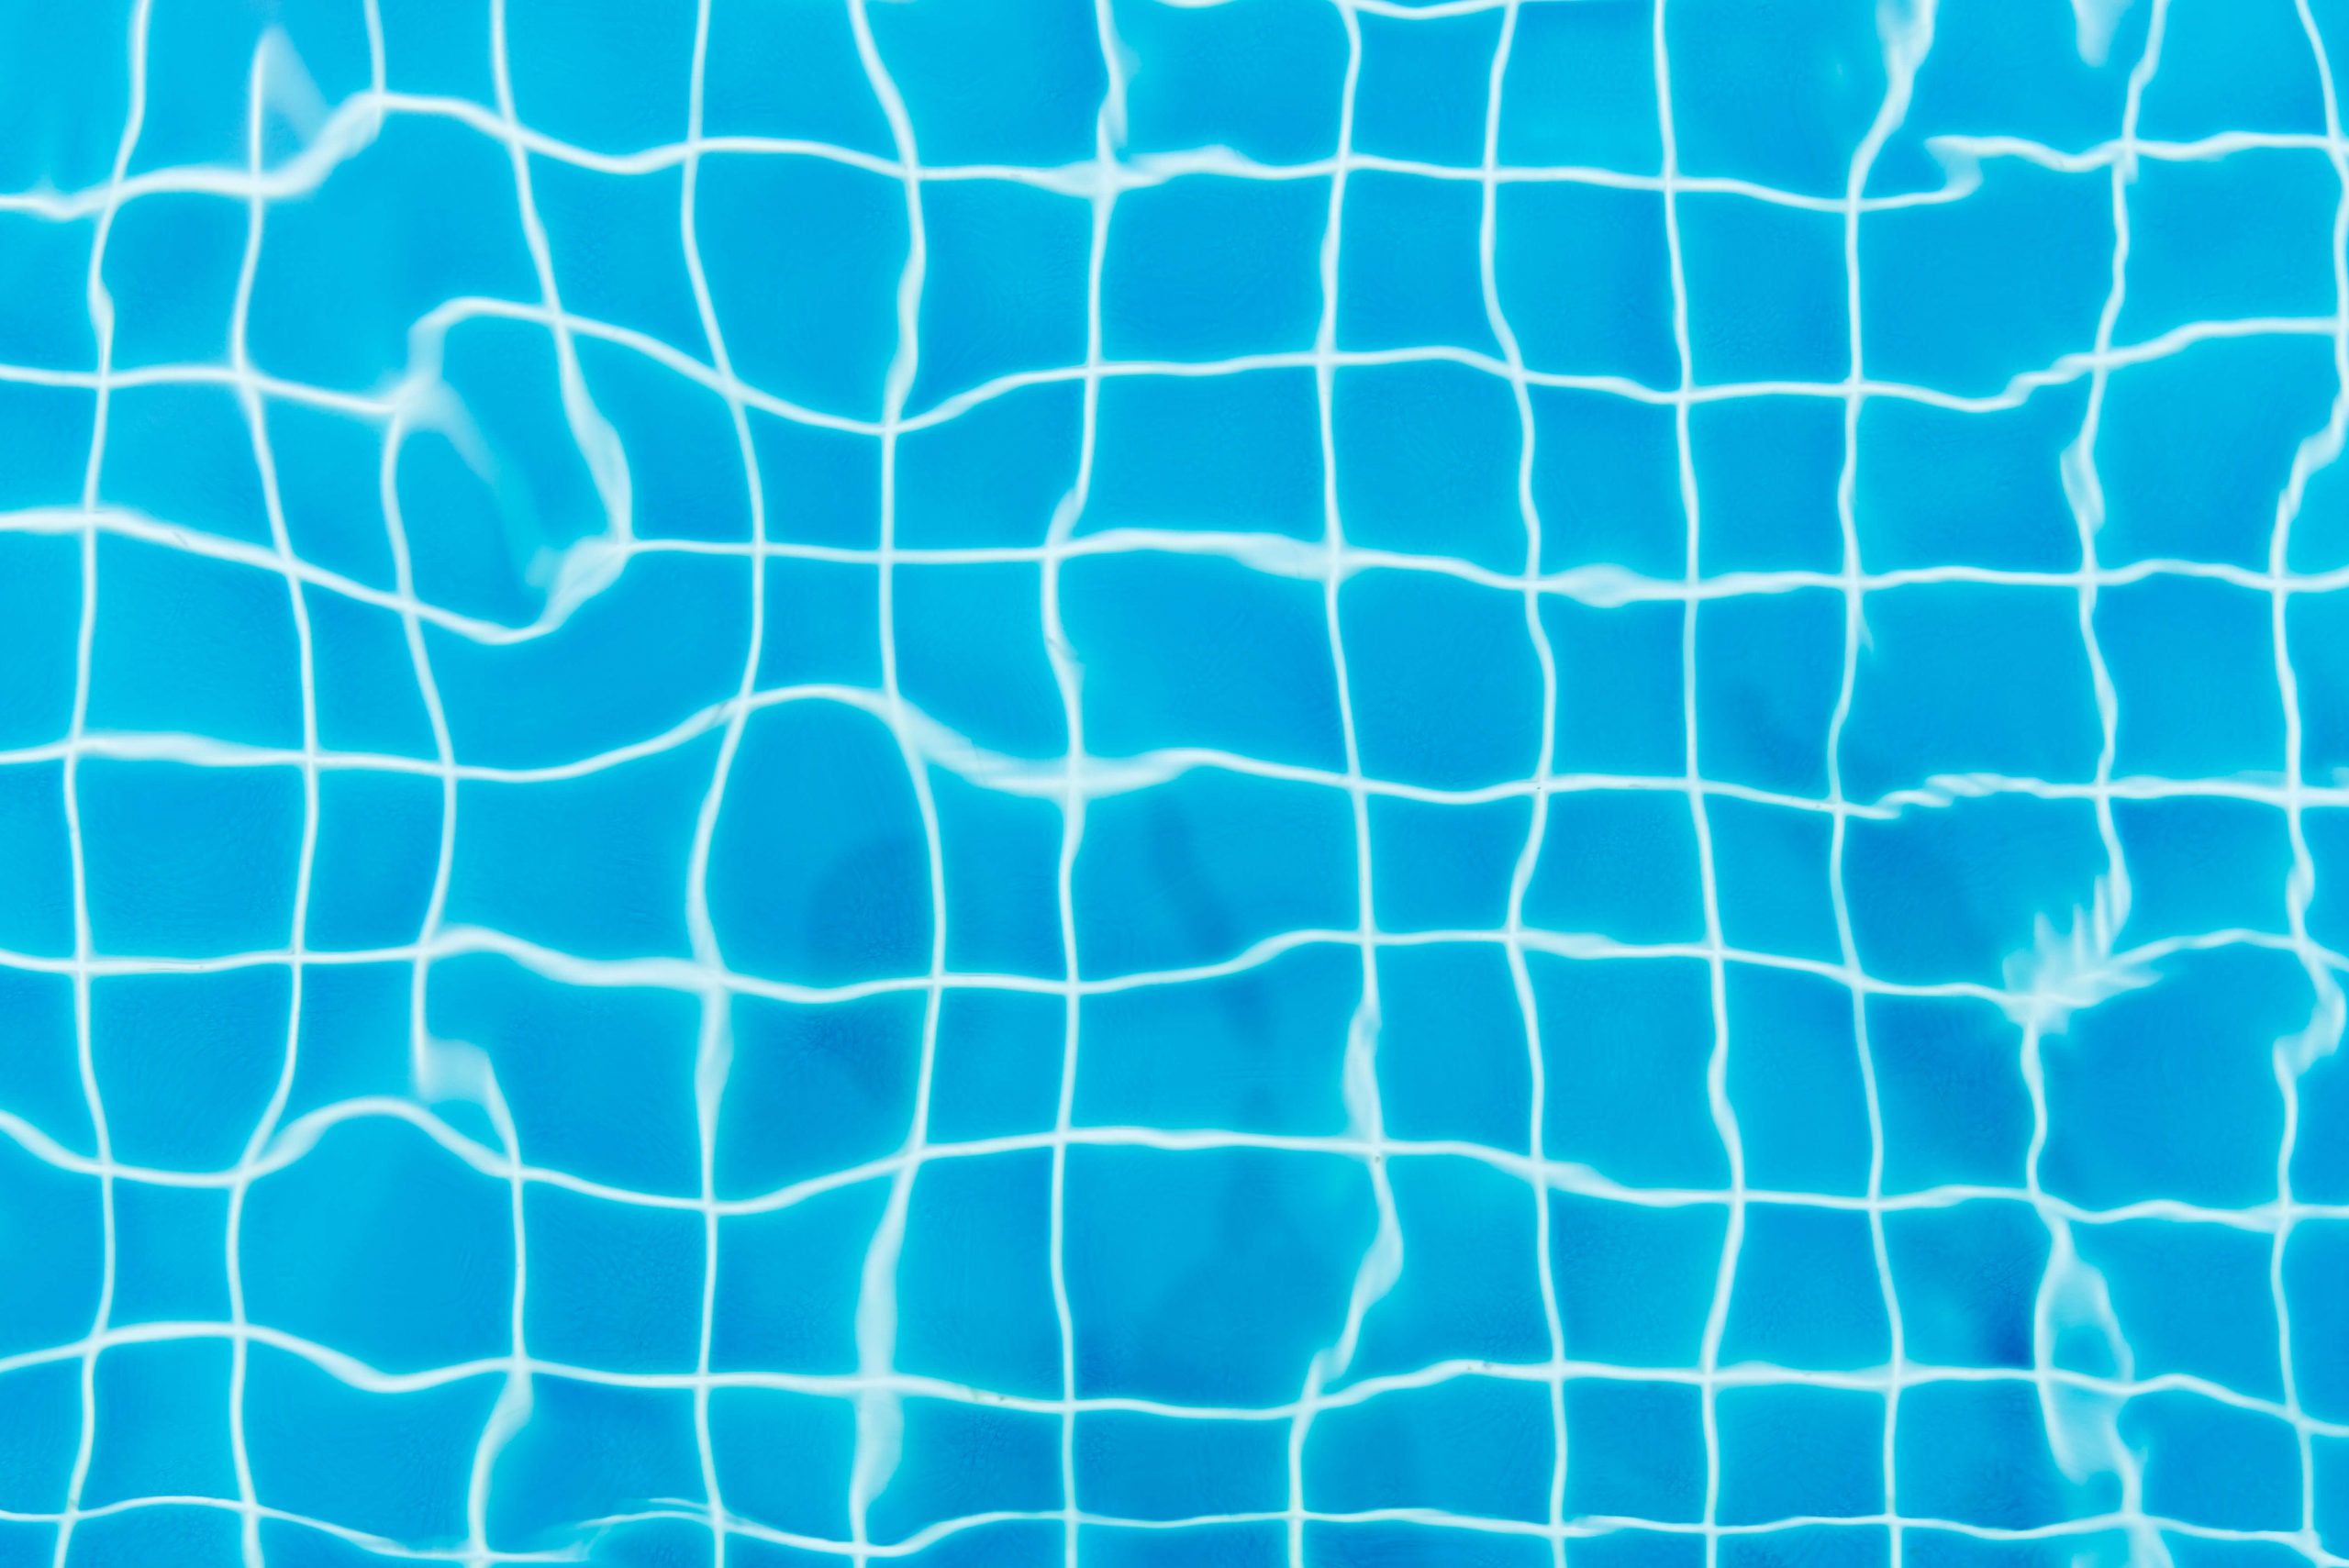 La piscina modulare: l’innovazione che consente comfort, risparmio e tanti altri vantaggi